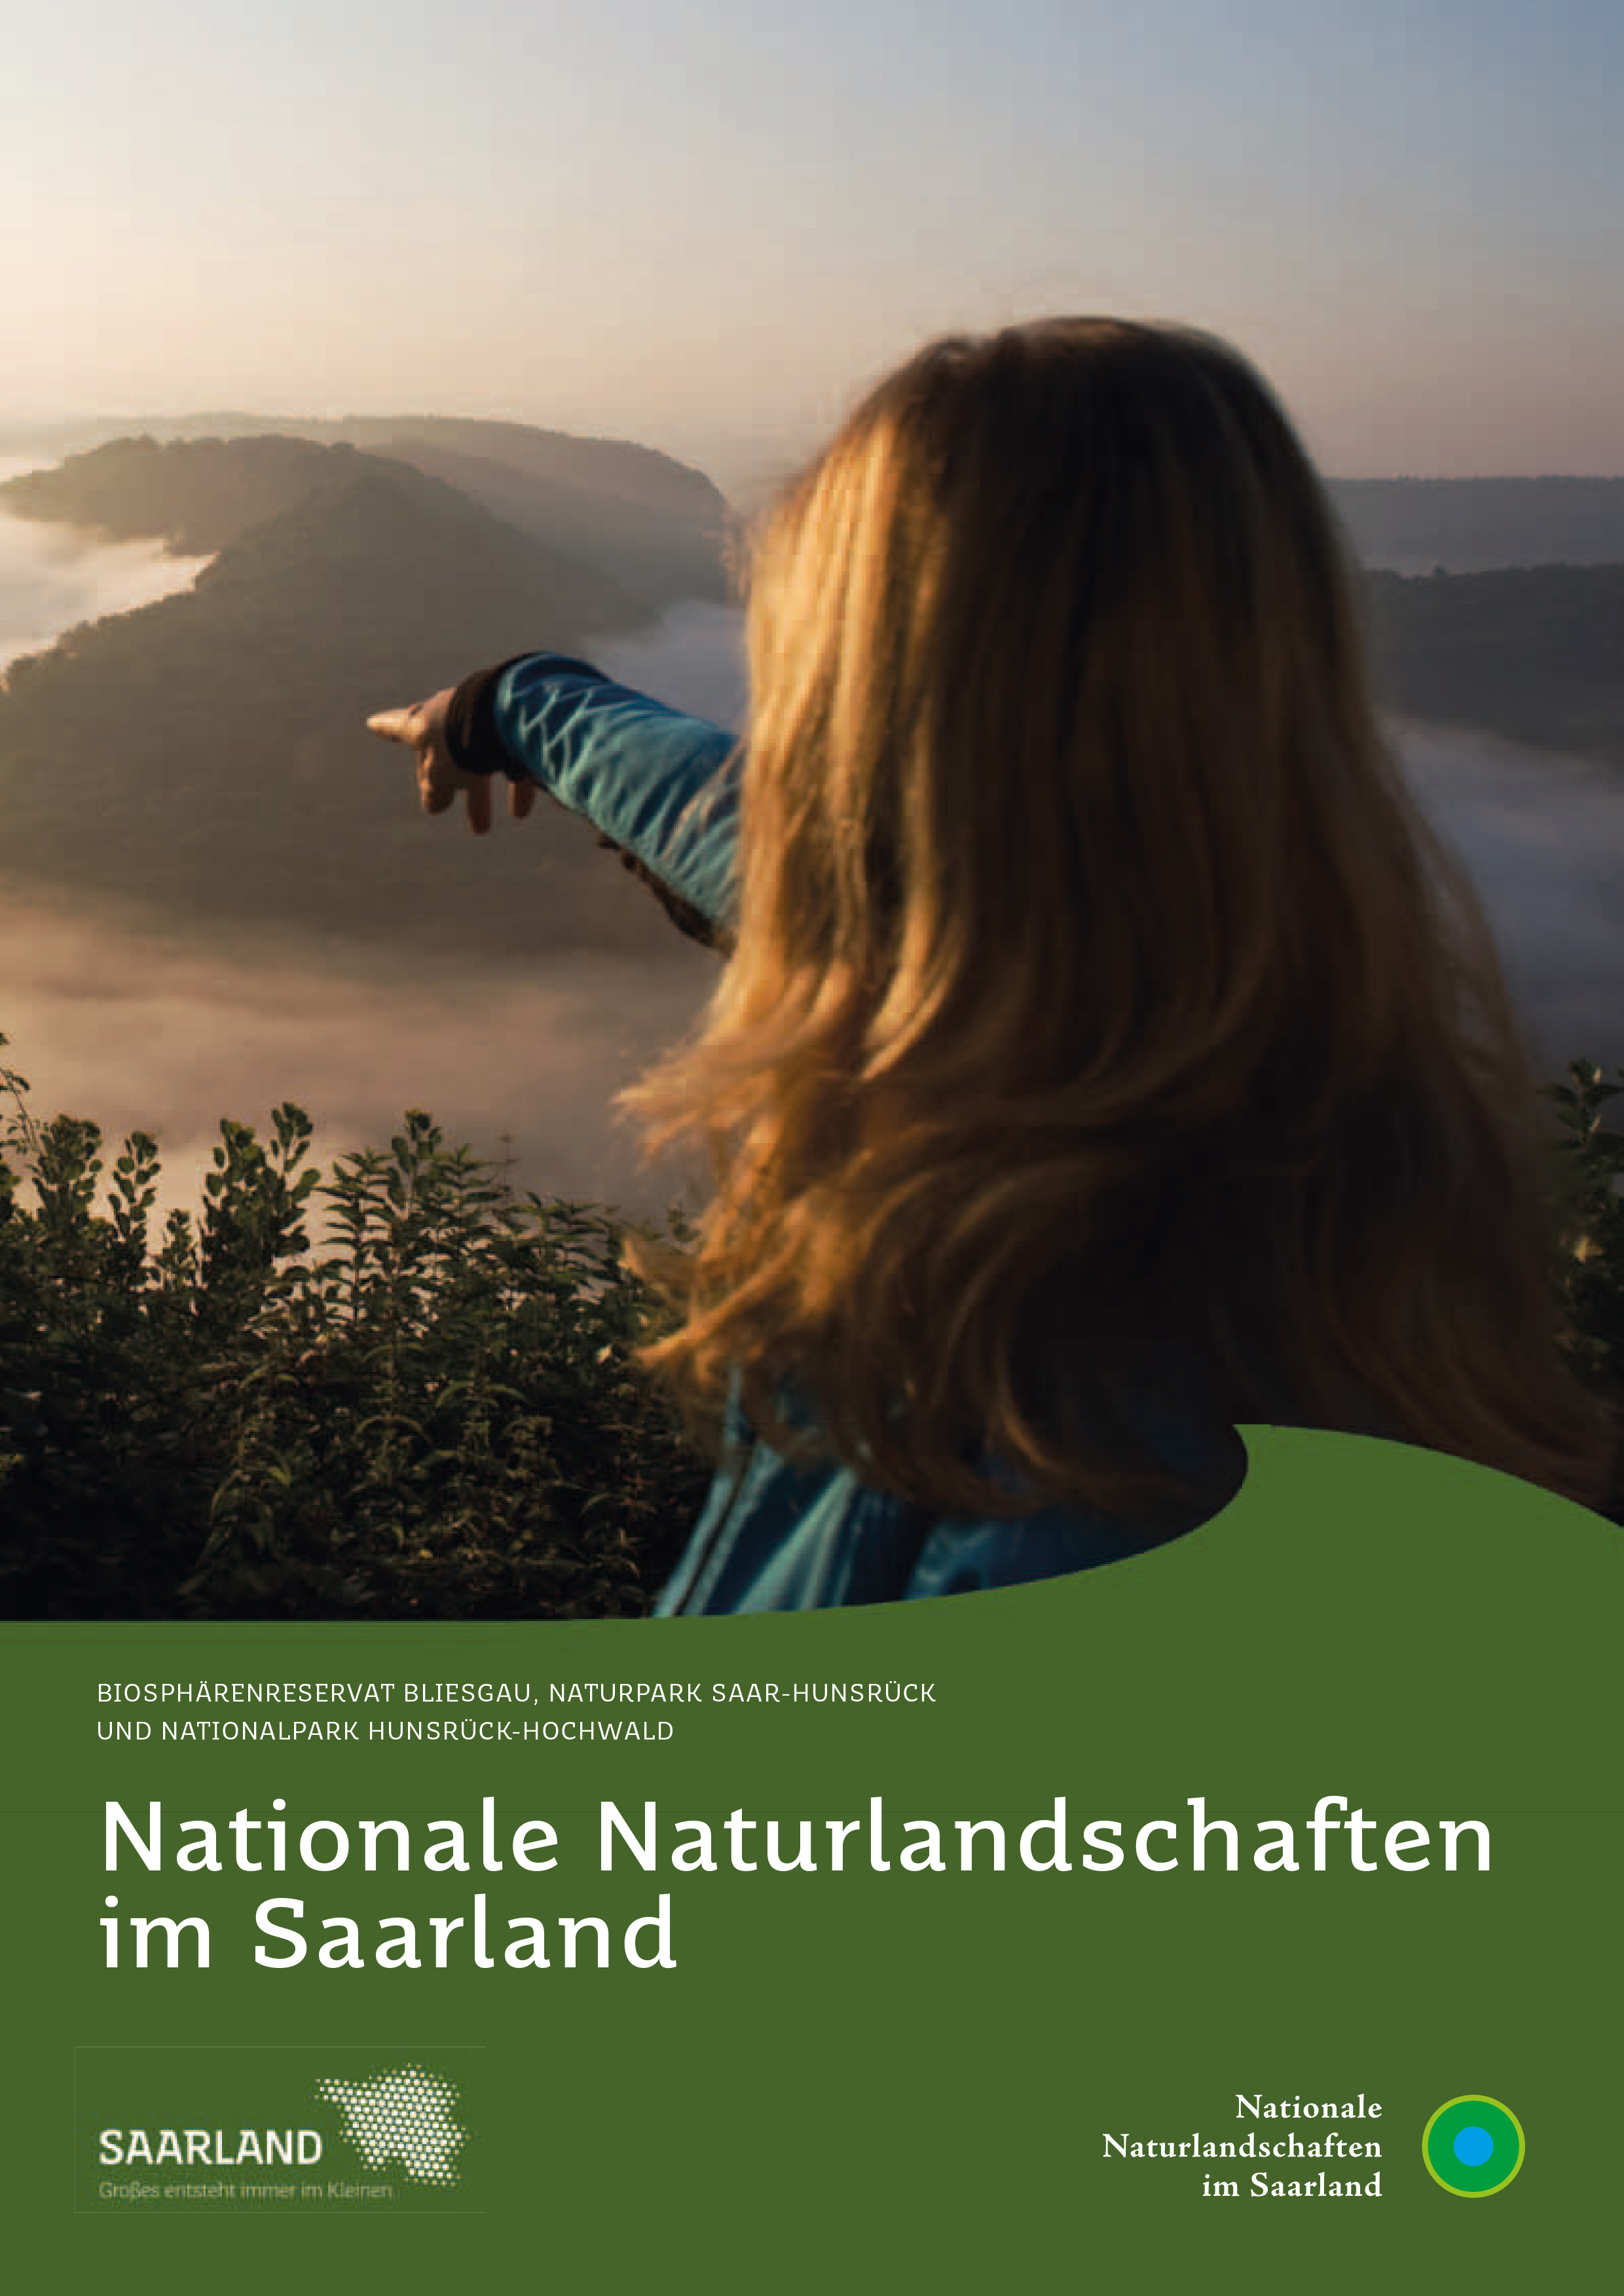 Das Bild zeigt die Titelseite der Broschüre "Nationale Naturlandschaften im Saarland".